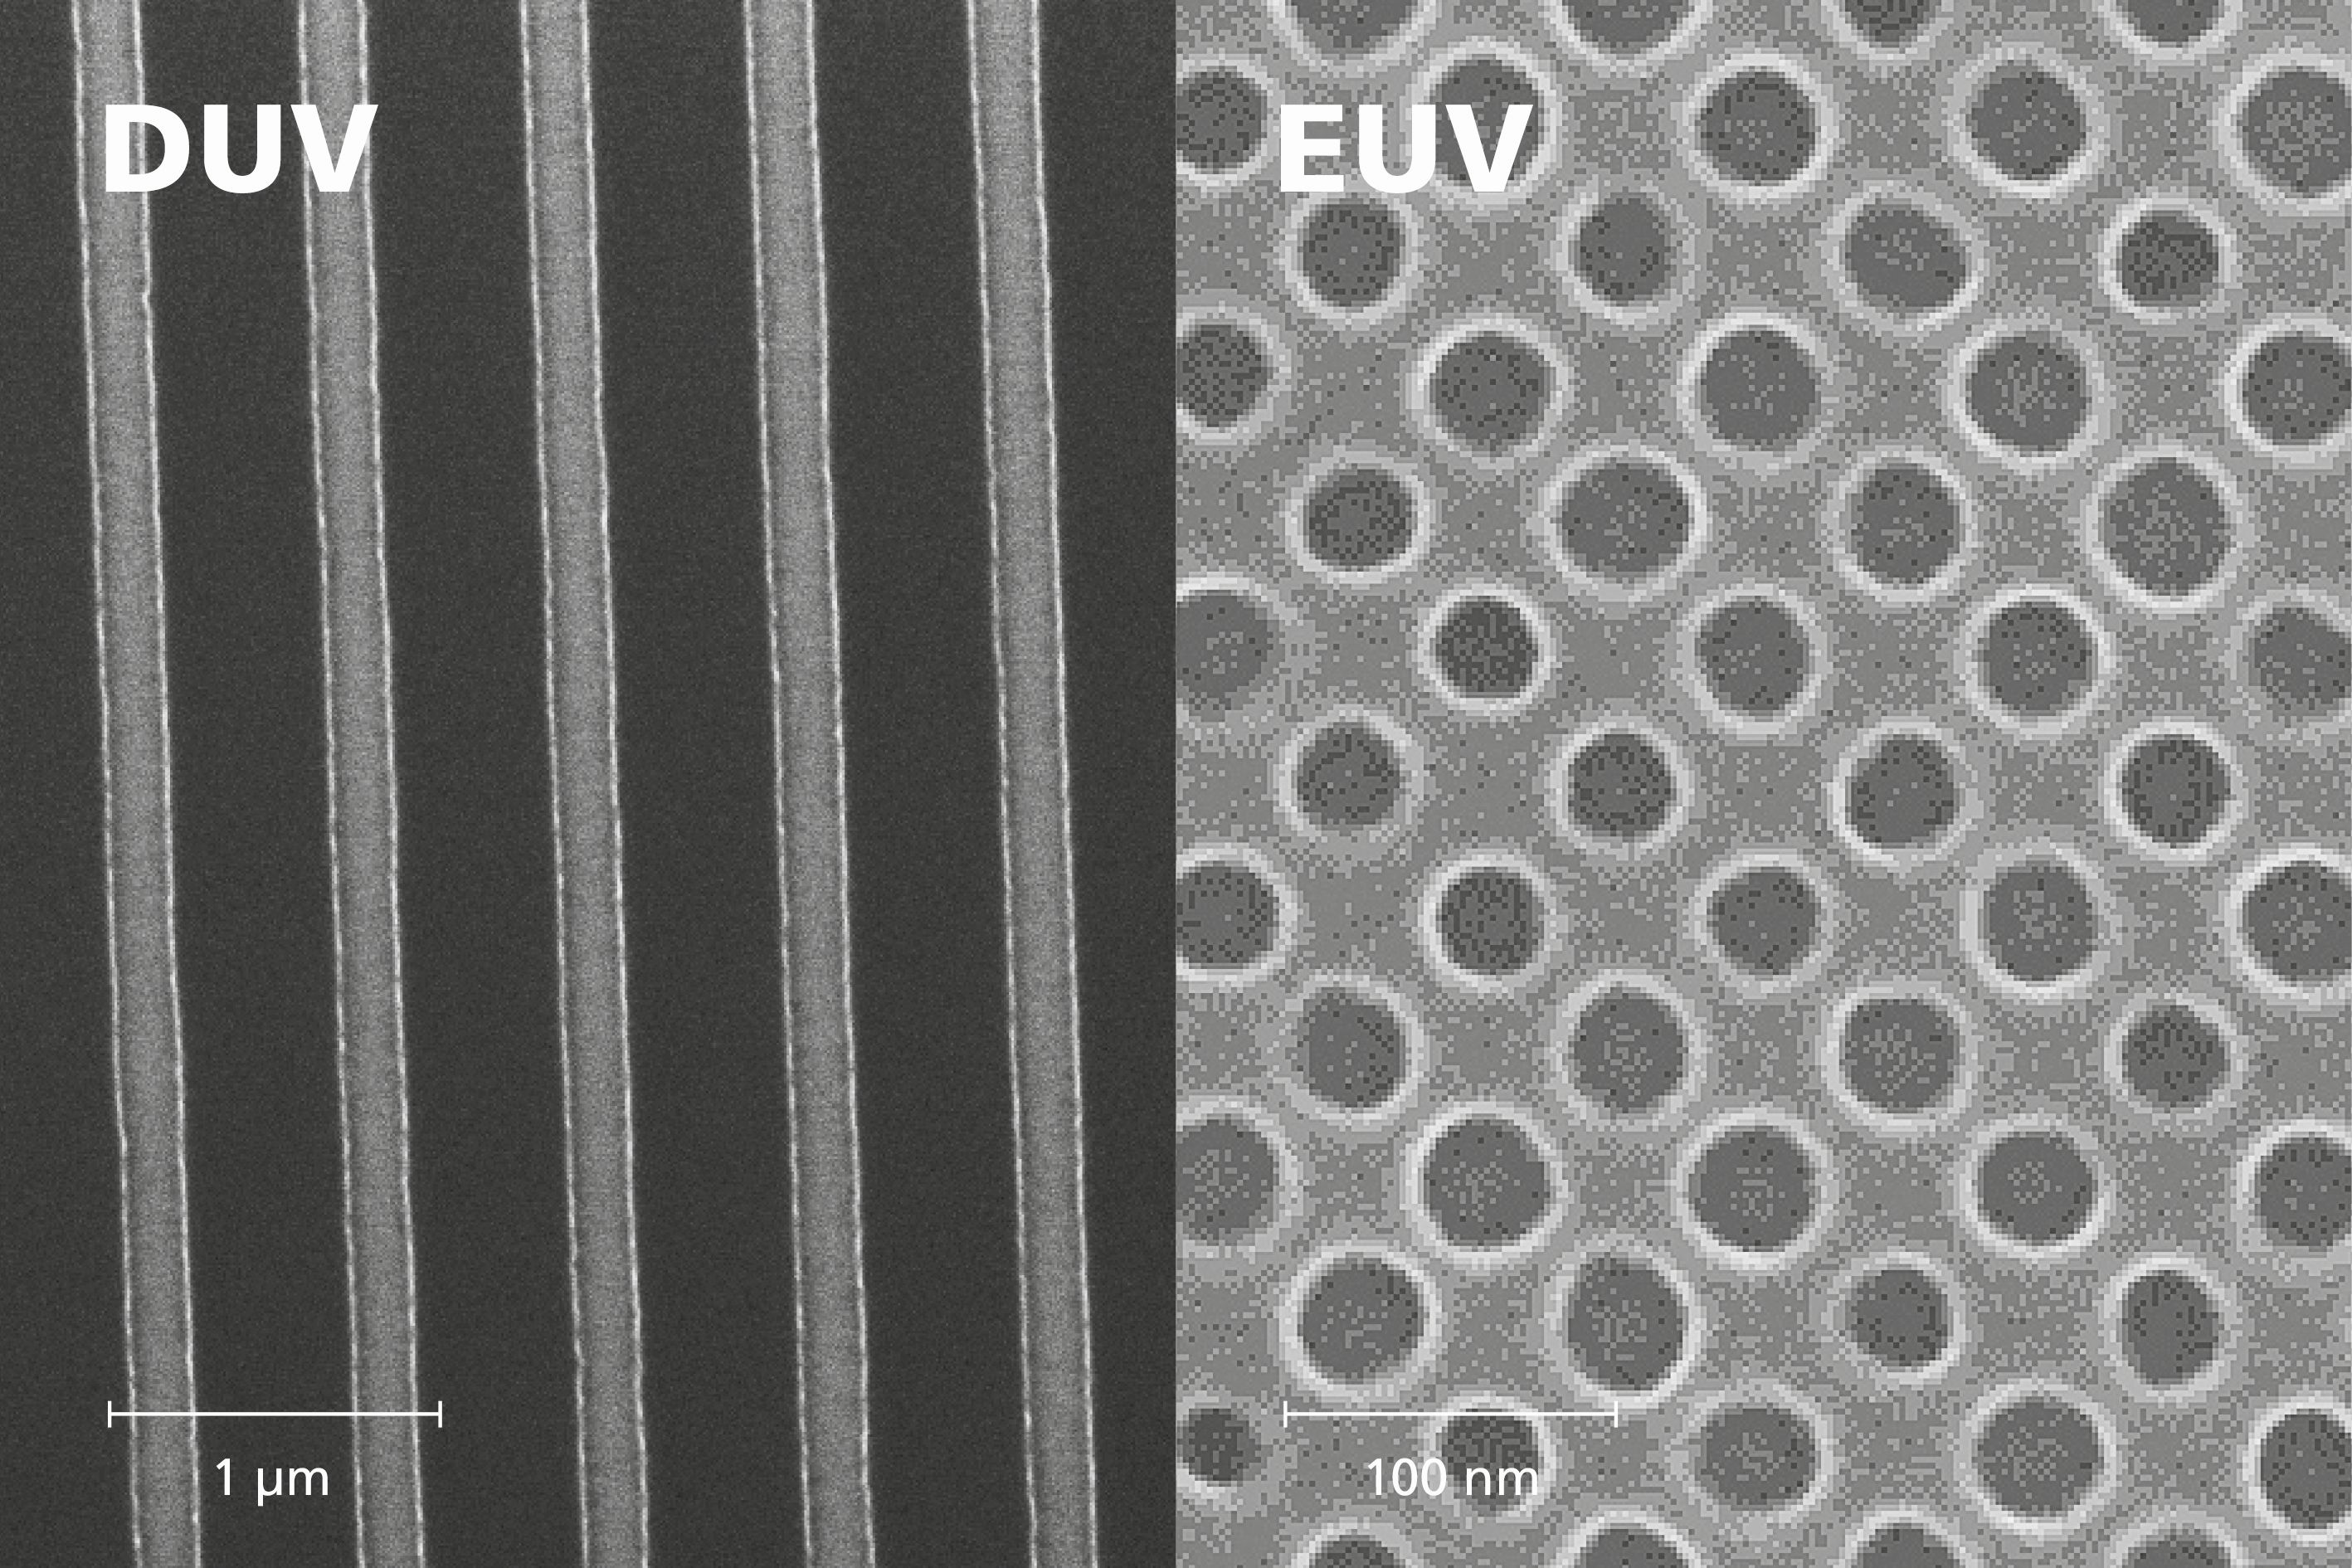 Nanostrukturen mit 300 nm (links, DUV) und 28 nm (rechts, EUV) half-pitch (HP), generiert mit laborbasierter EUV-Quelle.